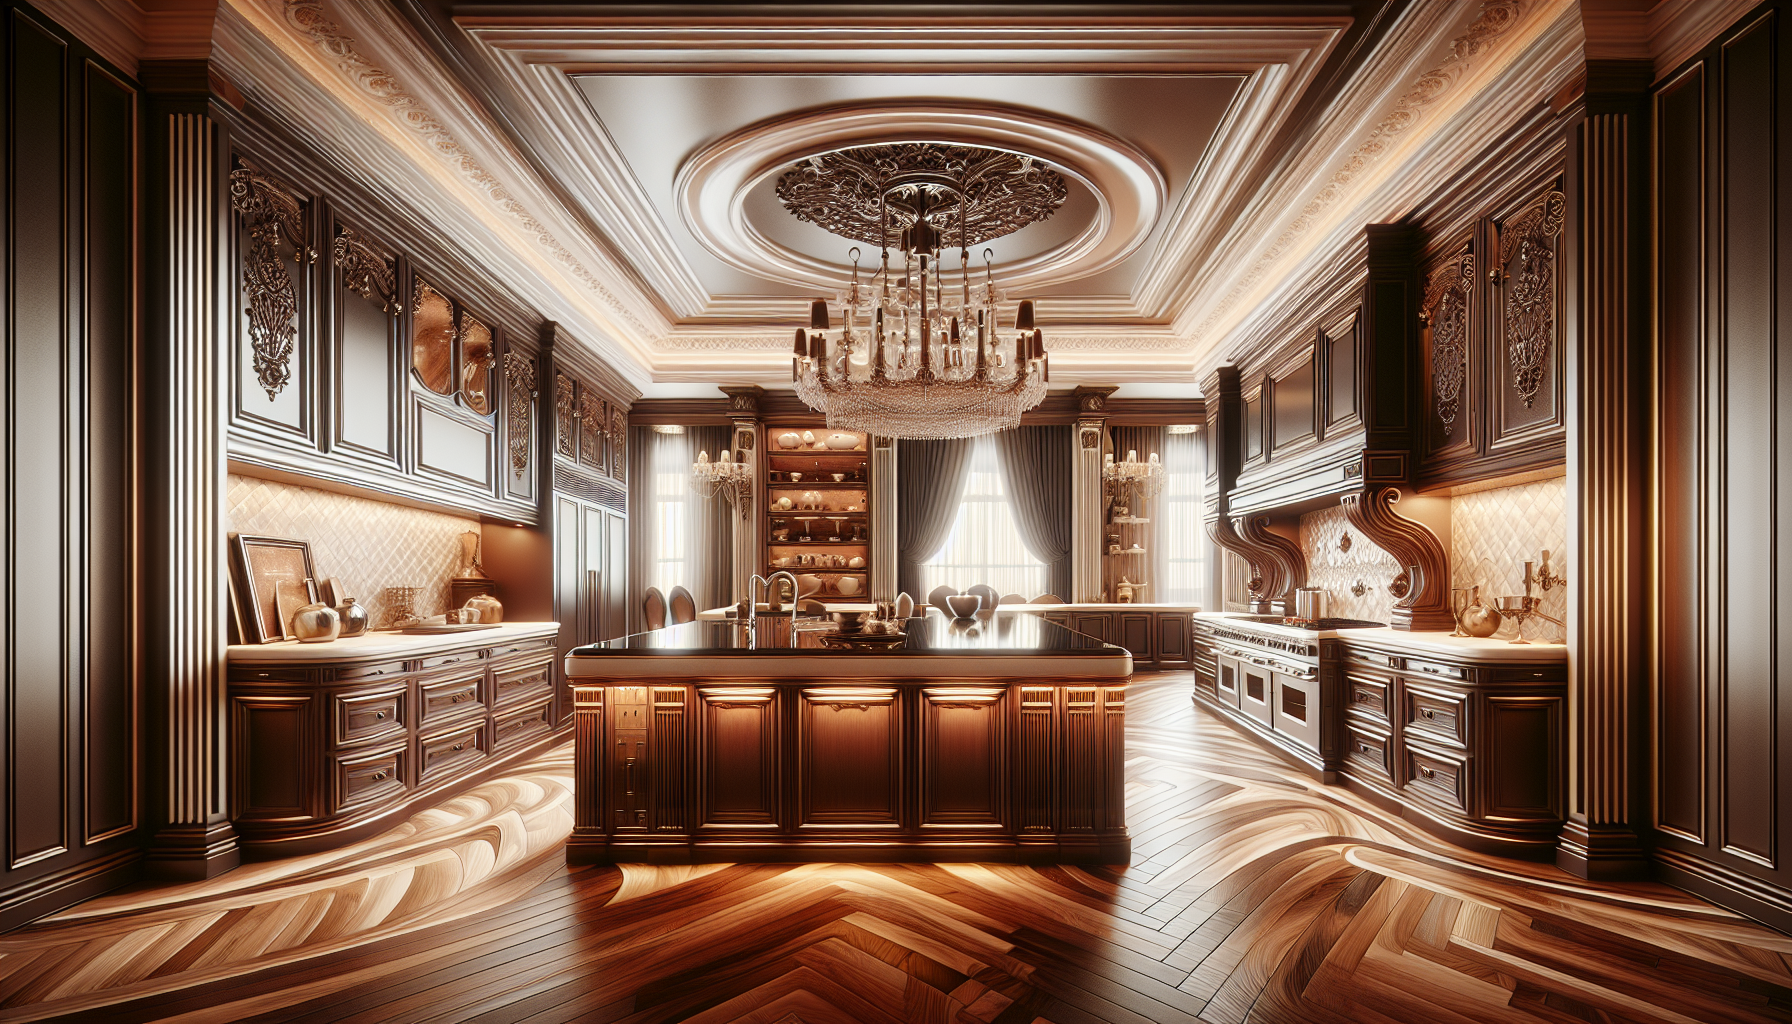 Designing Your Luxury Kitchen